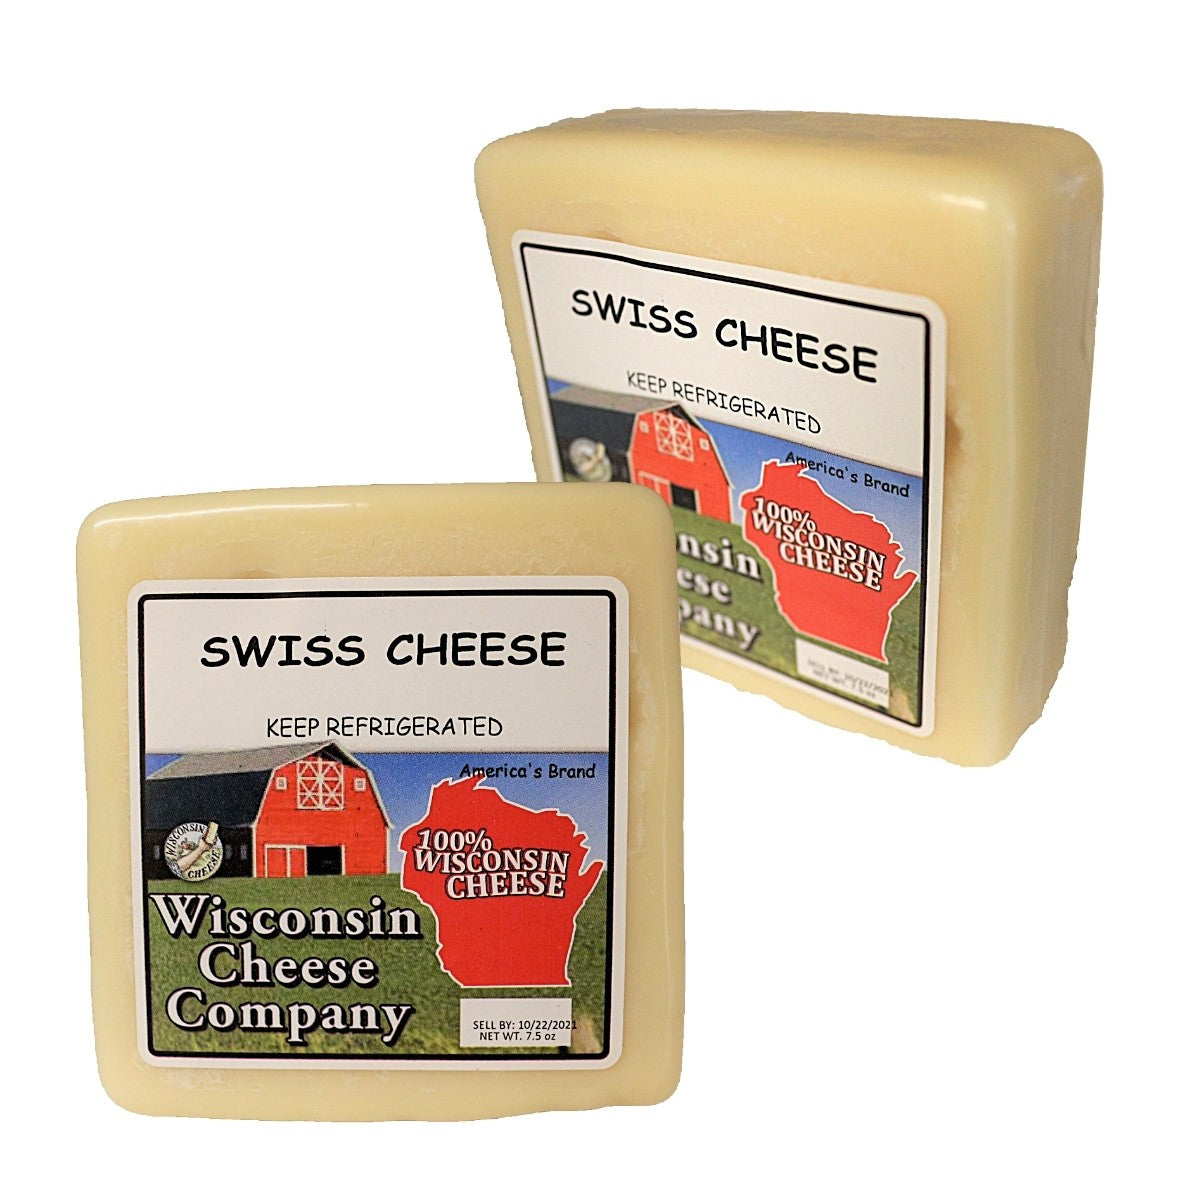 Two blocks of Swiss Cheese